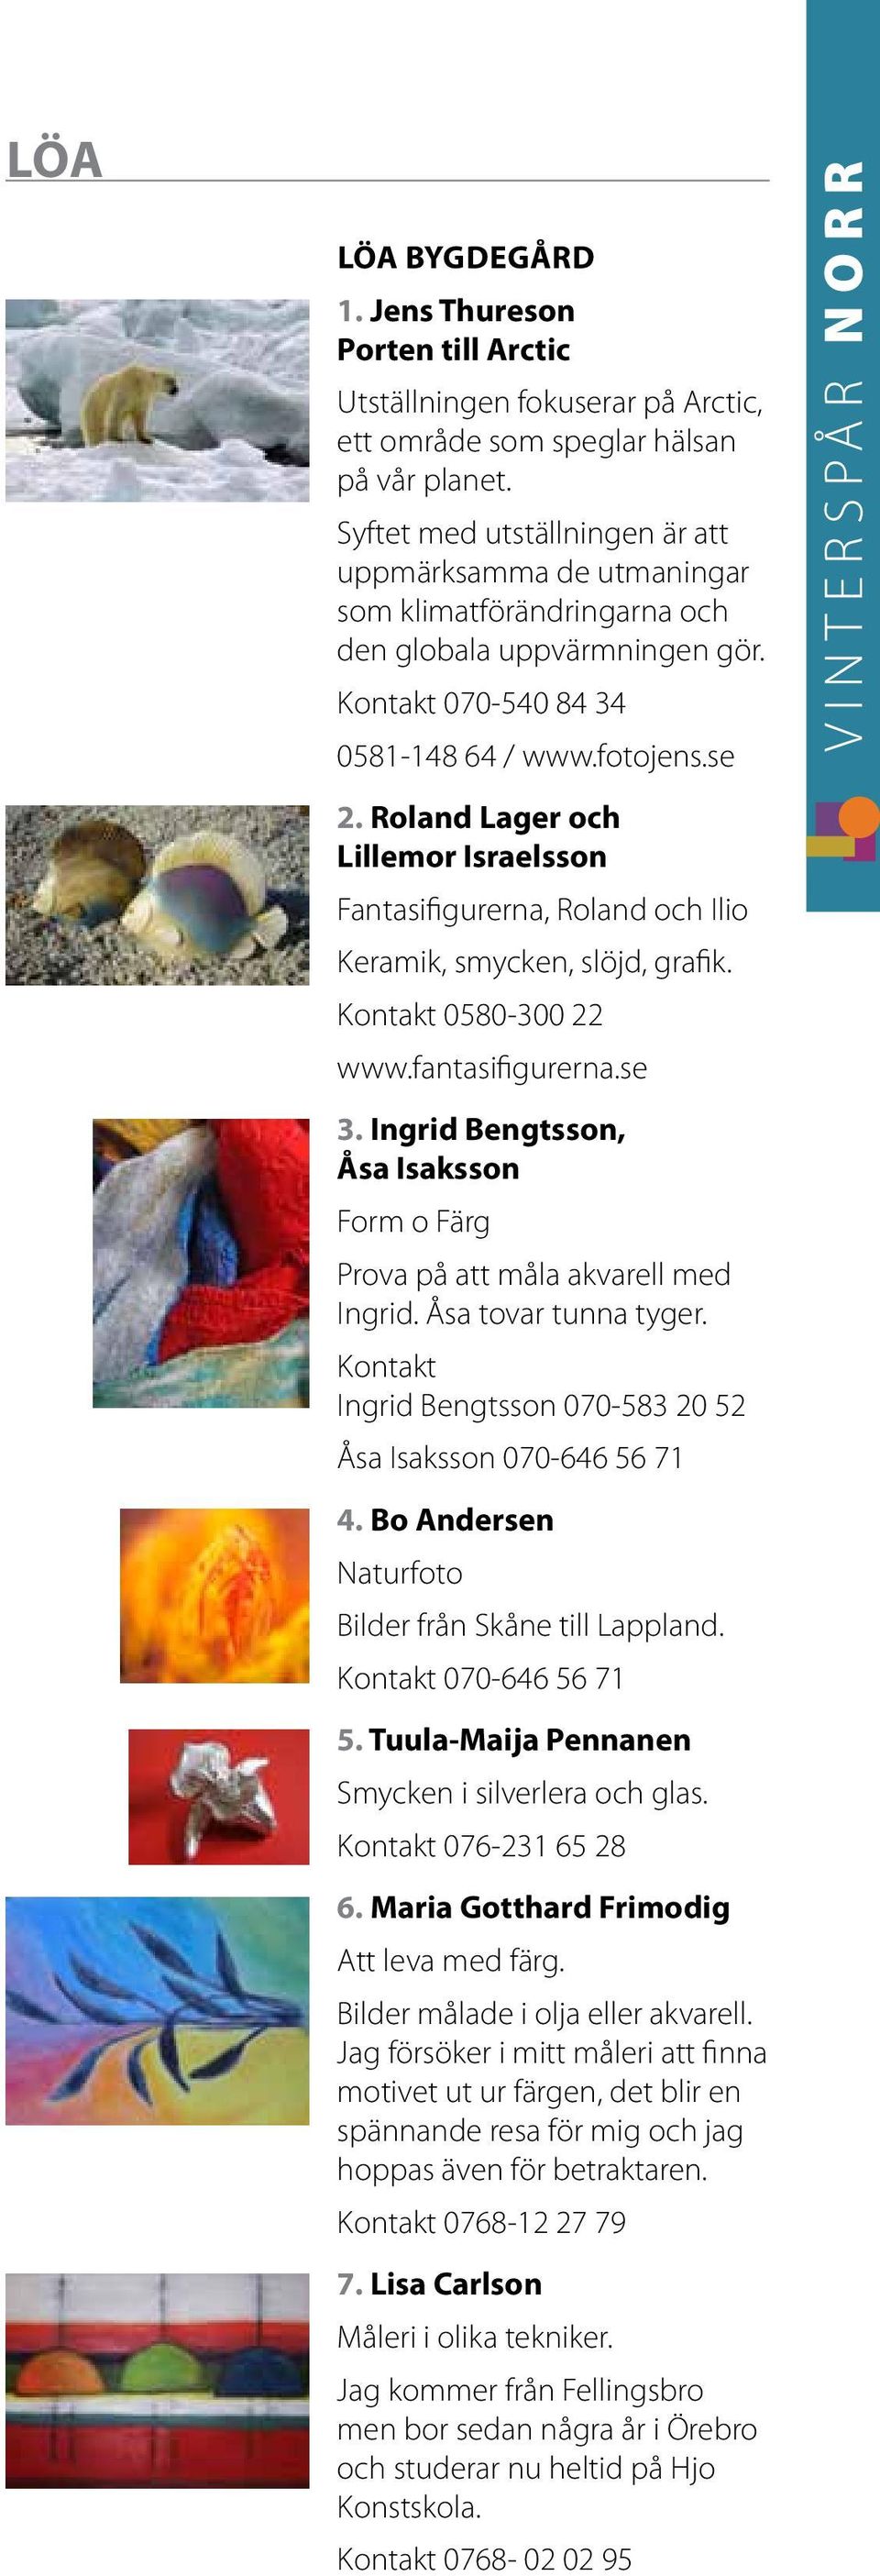 Roland Lager och Lillemor Israelsson Fantasifigurerna, Roland och Ilio Keramik, smycken, slöjd, grafik. Kontakt 0580-300 22 www.fantasifigurerna.se 3.